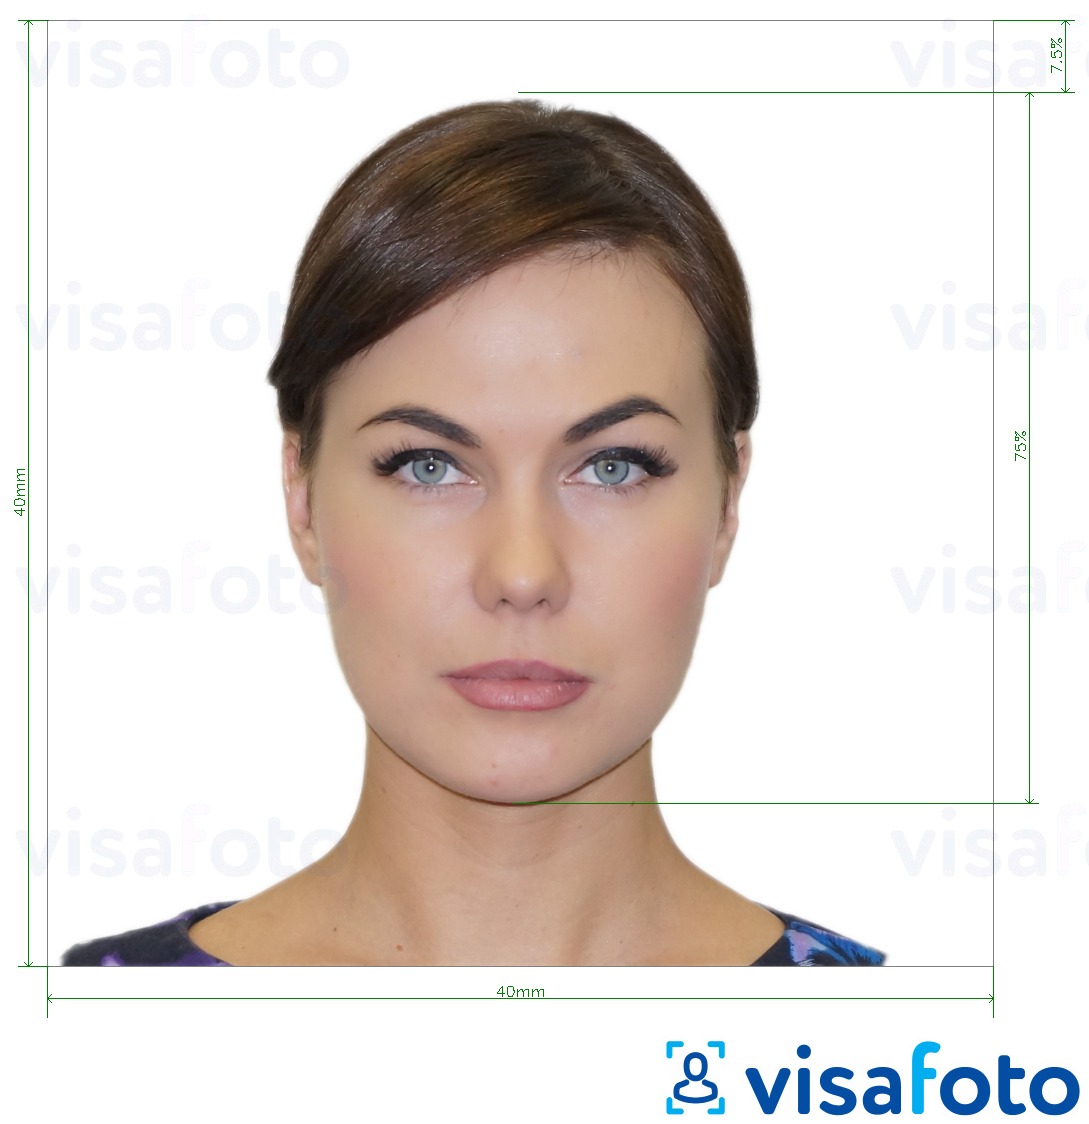 Contoh dari foto untuk Paspor Italia 40x40 mm (LA consulate) 4x4 cm dengan ukuran spesifikasi yang tepat